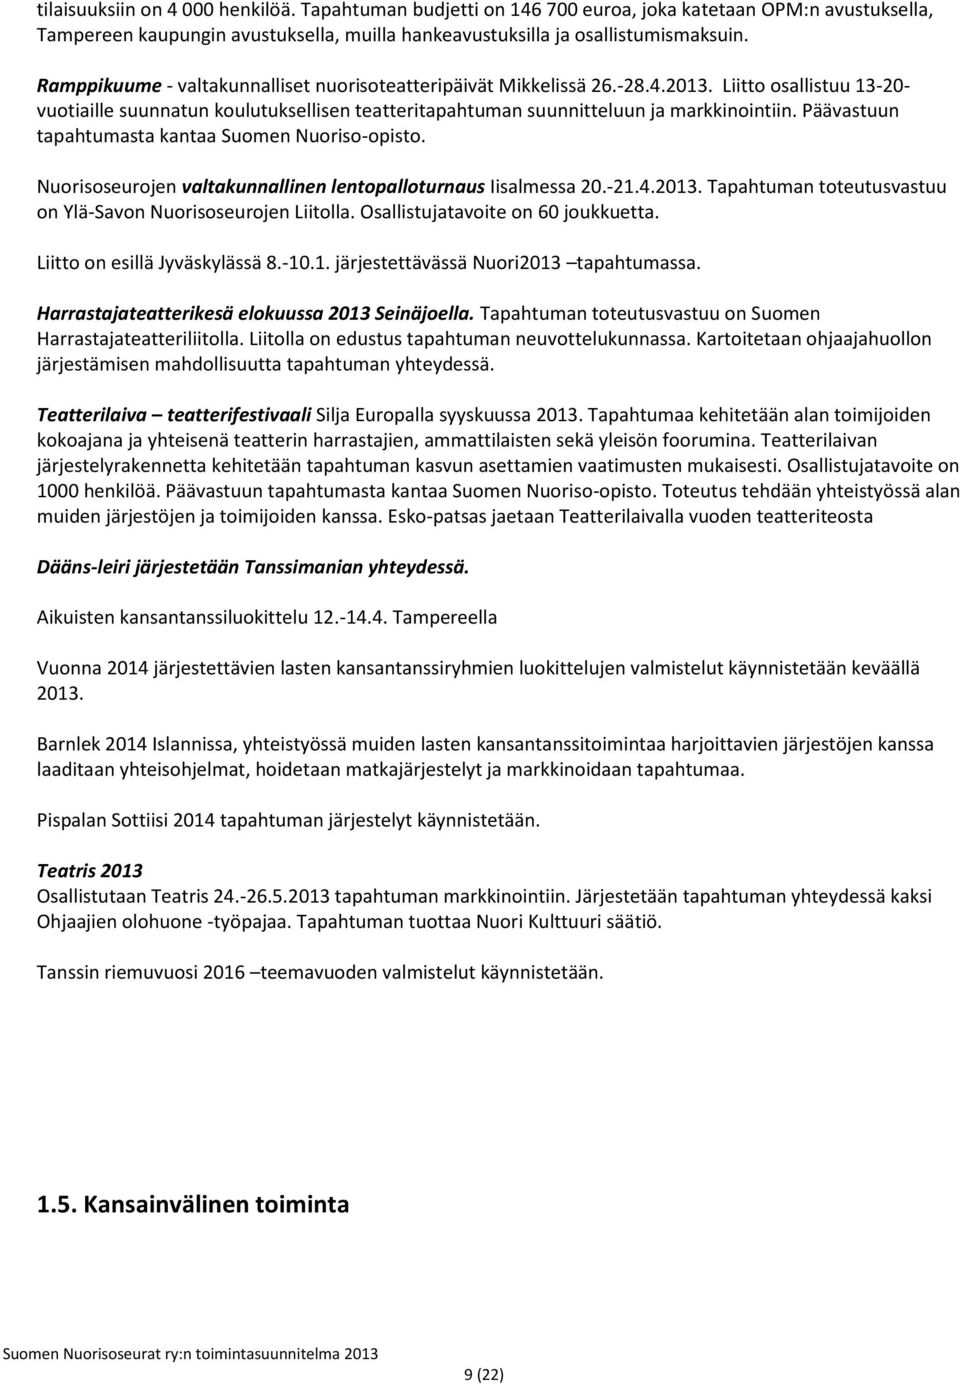 Päävastuun tapahtumasta kantaa Suomen Nuoriso-opisto. Nuorisoseurojen valtakunnallinen lentopalloturnaus Iisalmessa 20.-21.4.2013. Tapahtuman toteutusvastuu on Ylä-Savon Nuorisoseurojen Liitolla.